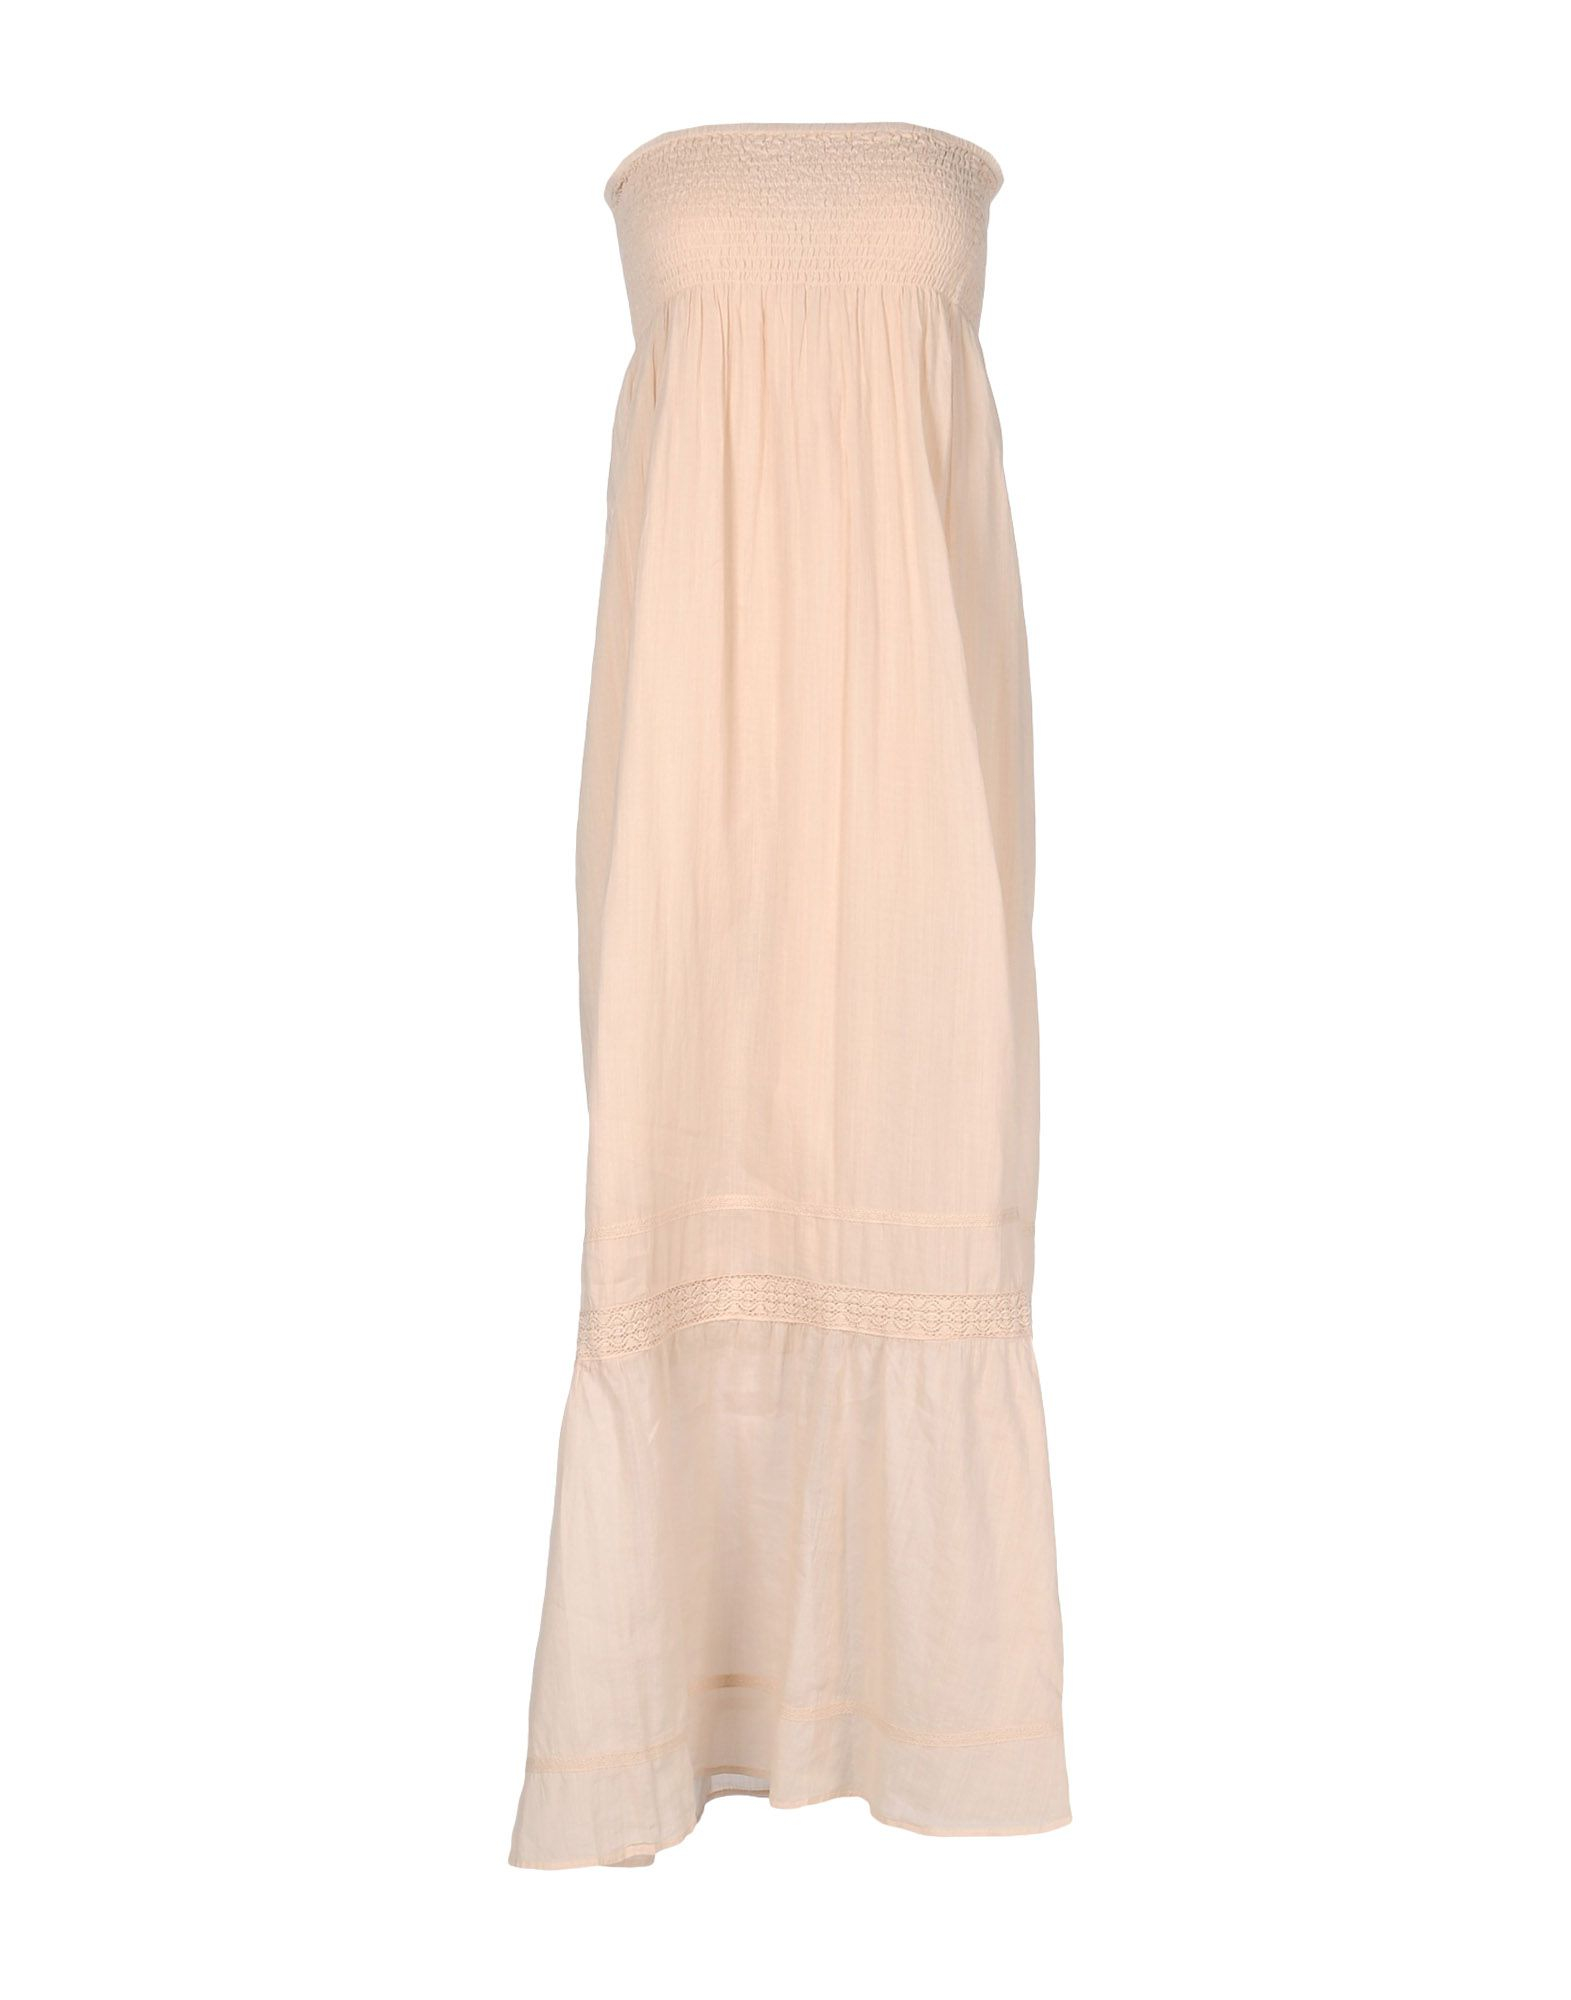 Lyst - Stefanel 3/4 Length Dress in Natural